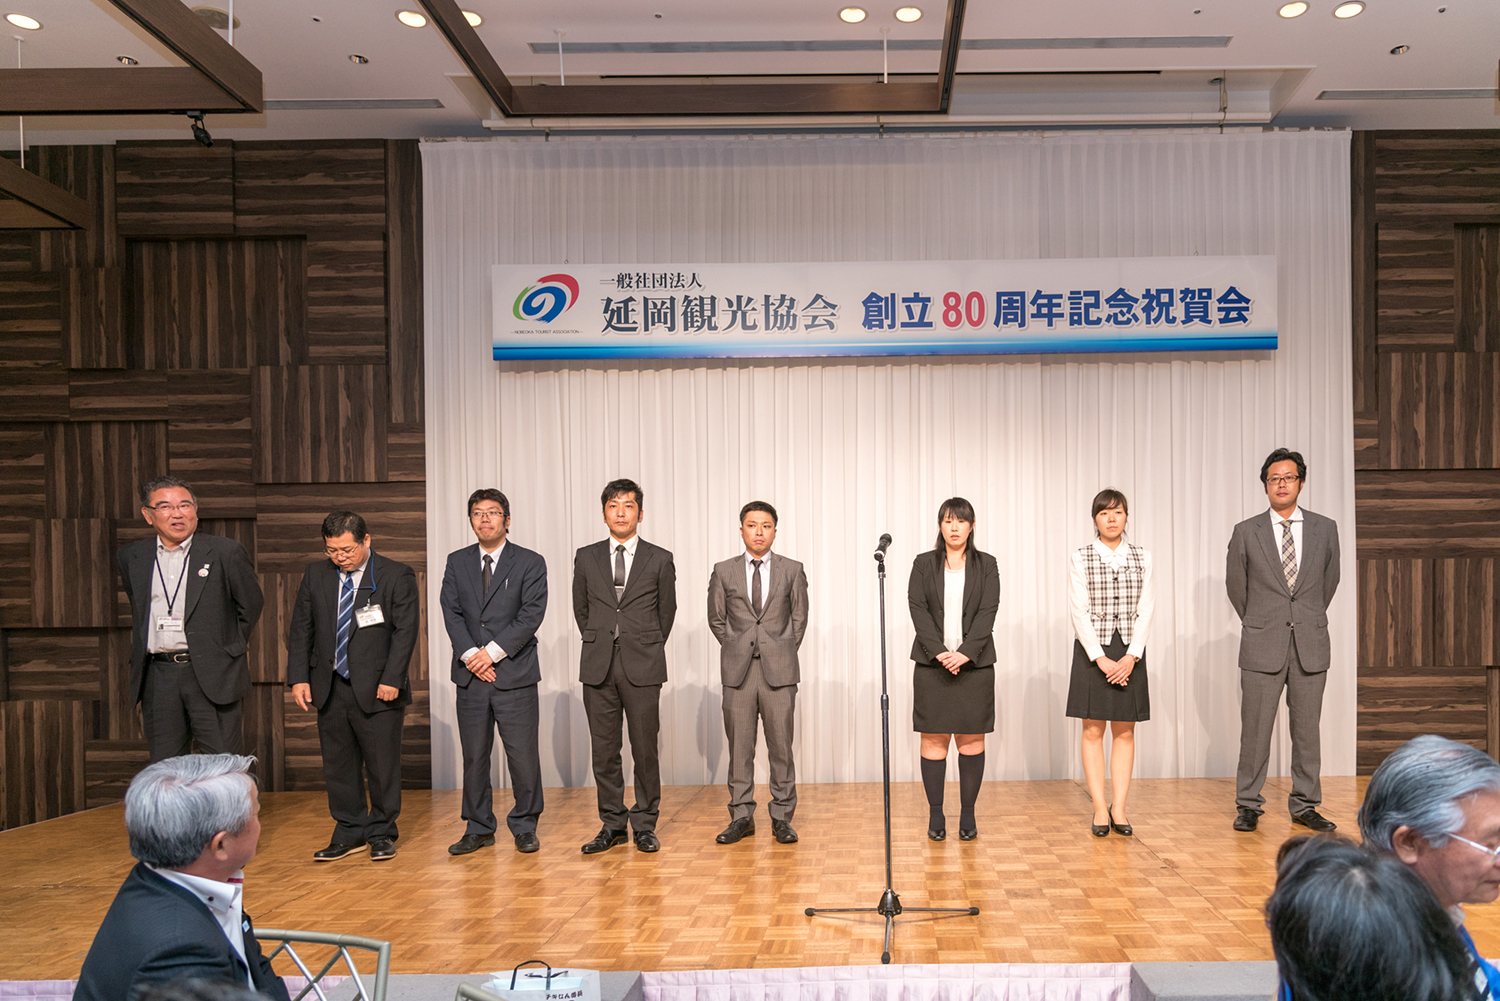  延岡観光協会 創立80周年記念式典